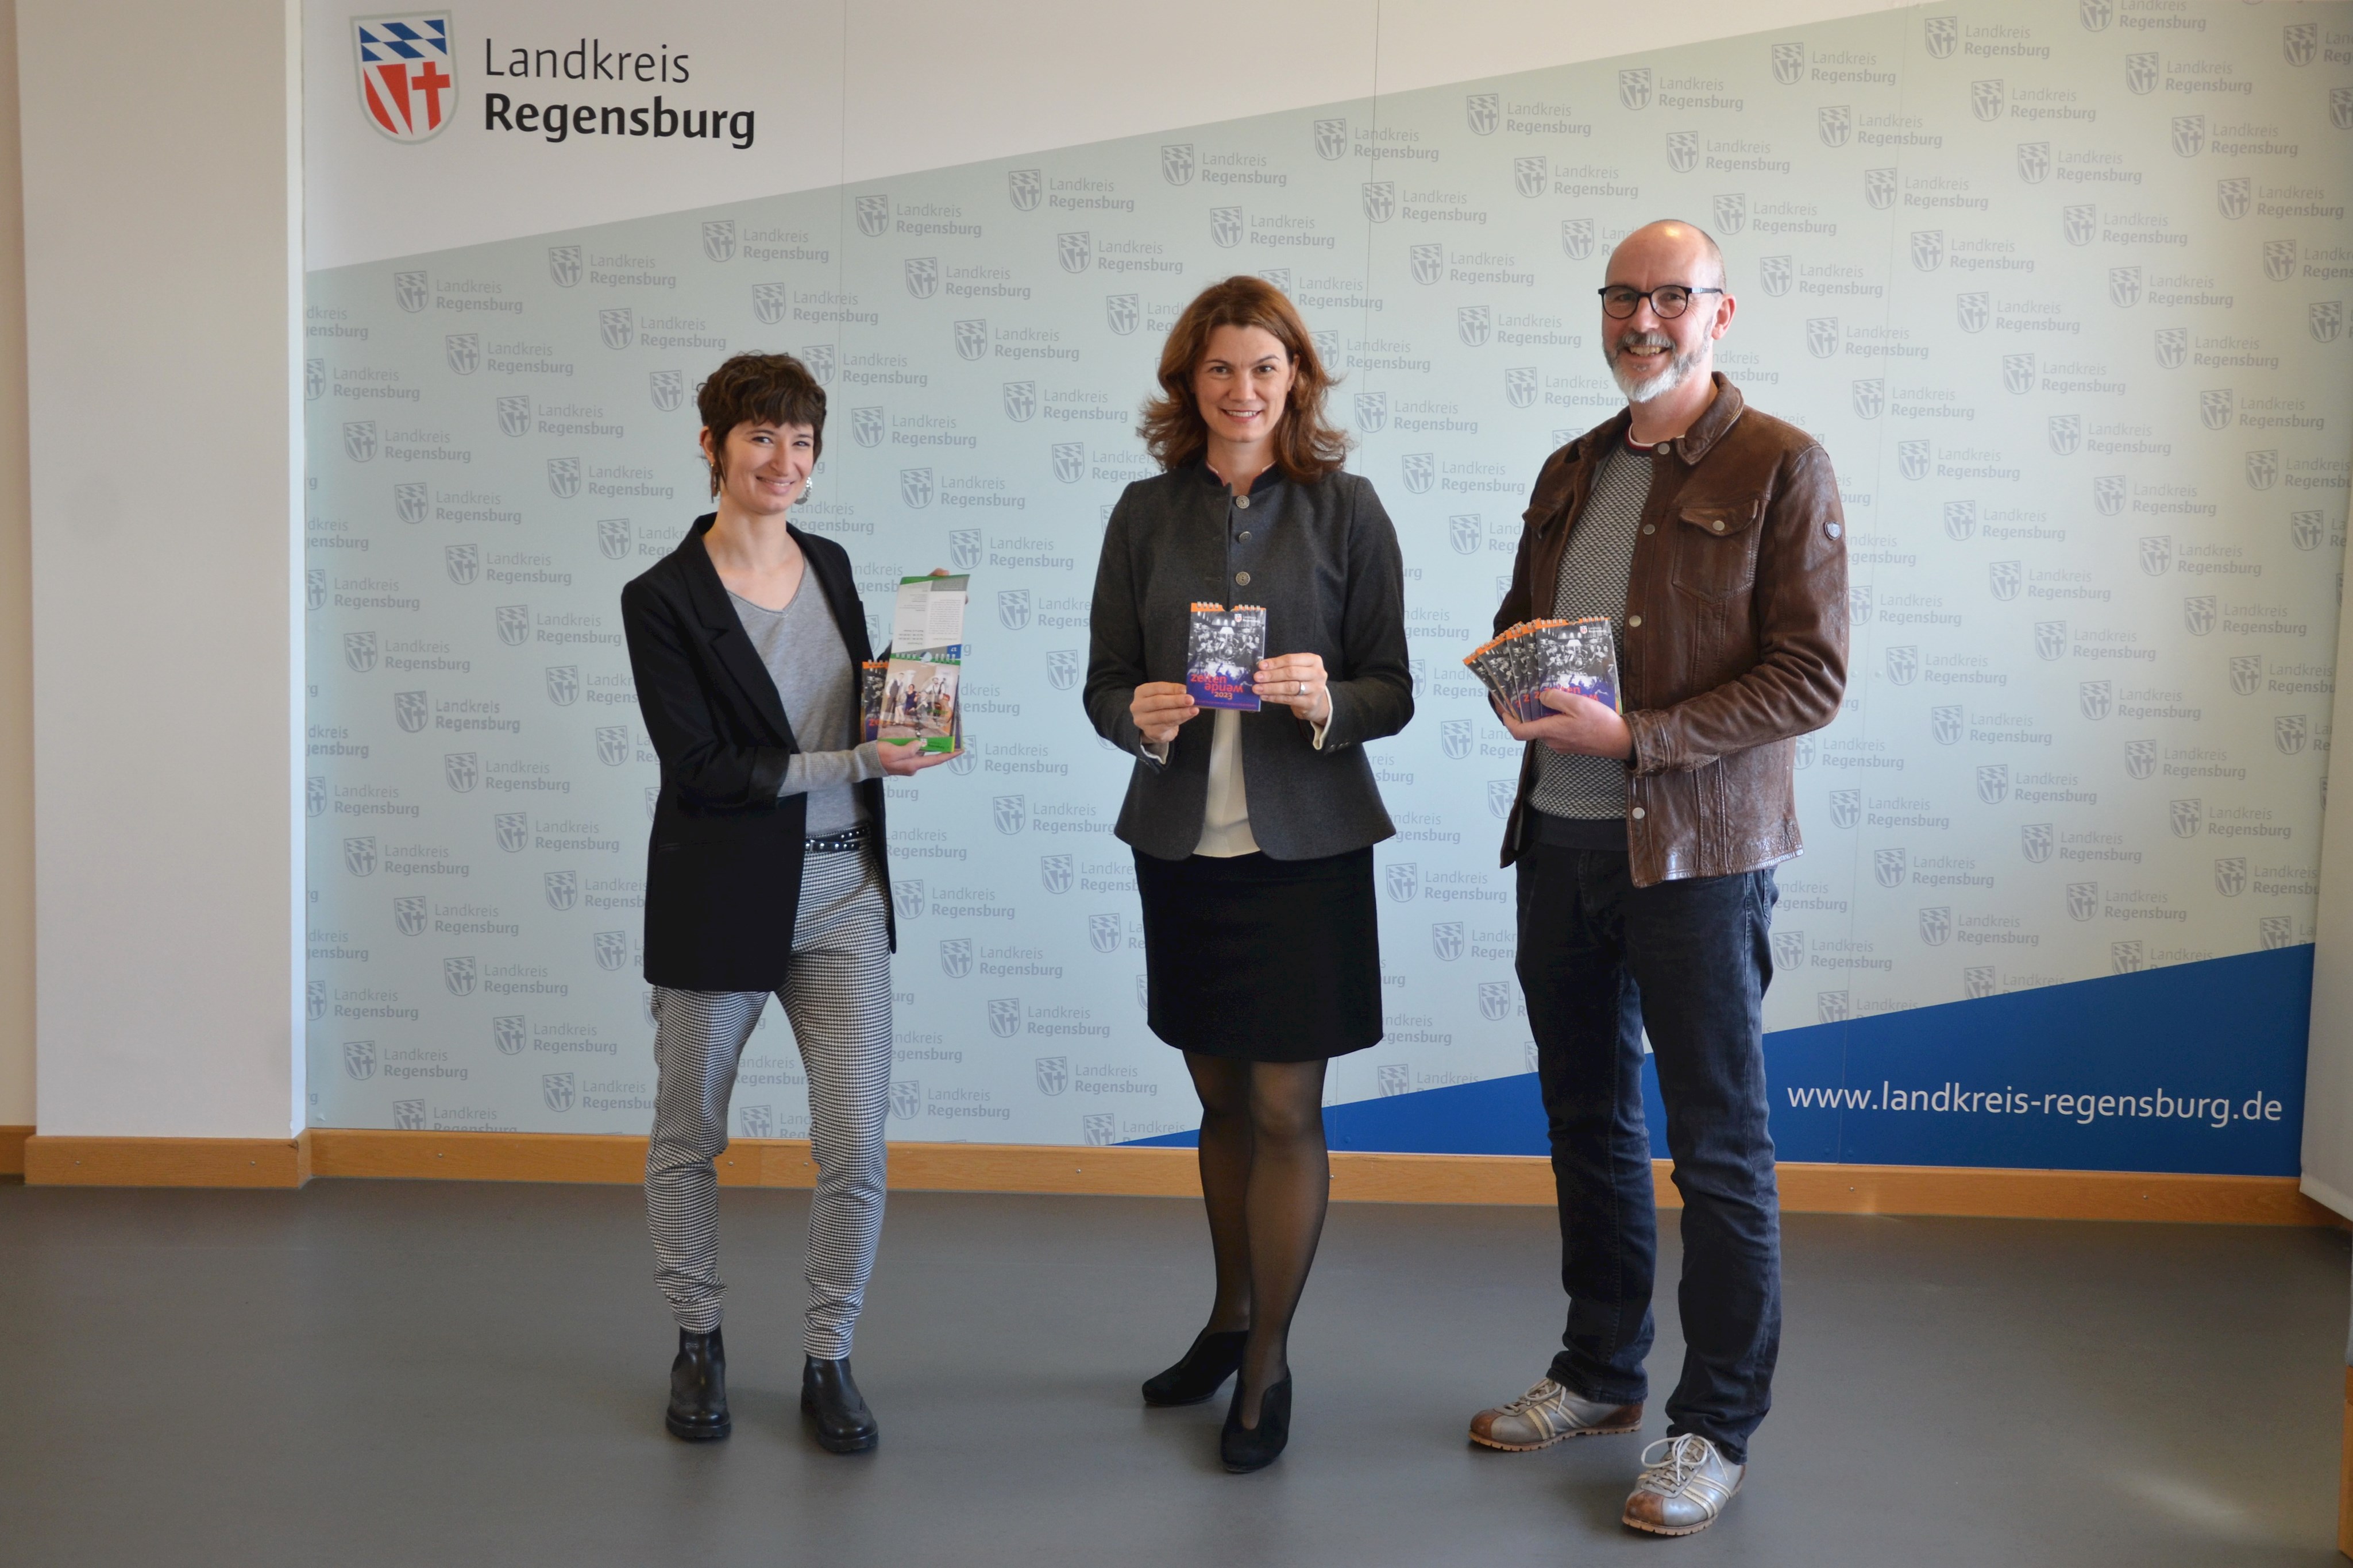  Veranstaltungsreihe des Landkreises Regensburg Kulturprogramm „Zeitenwende“ erscheint